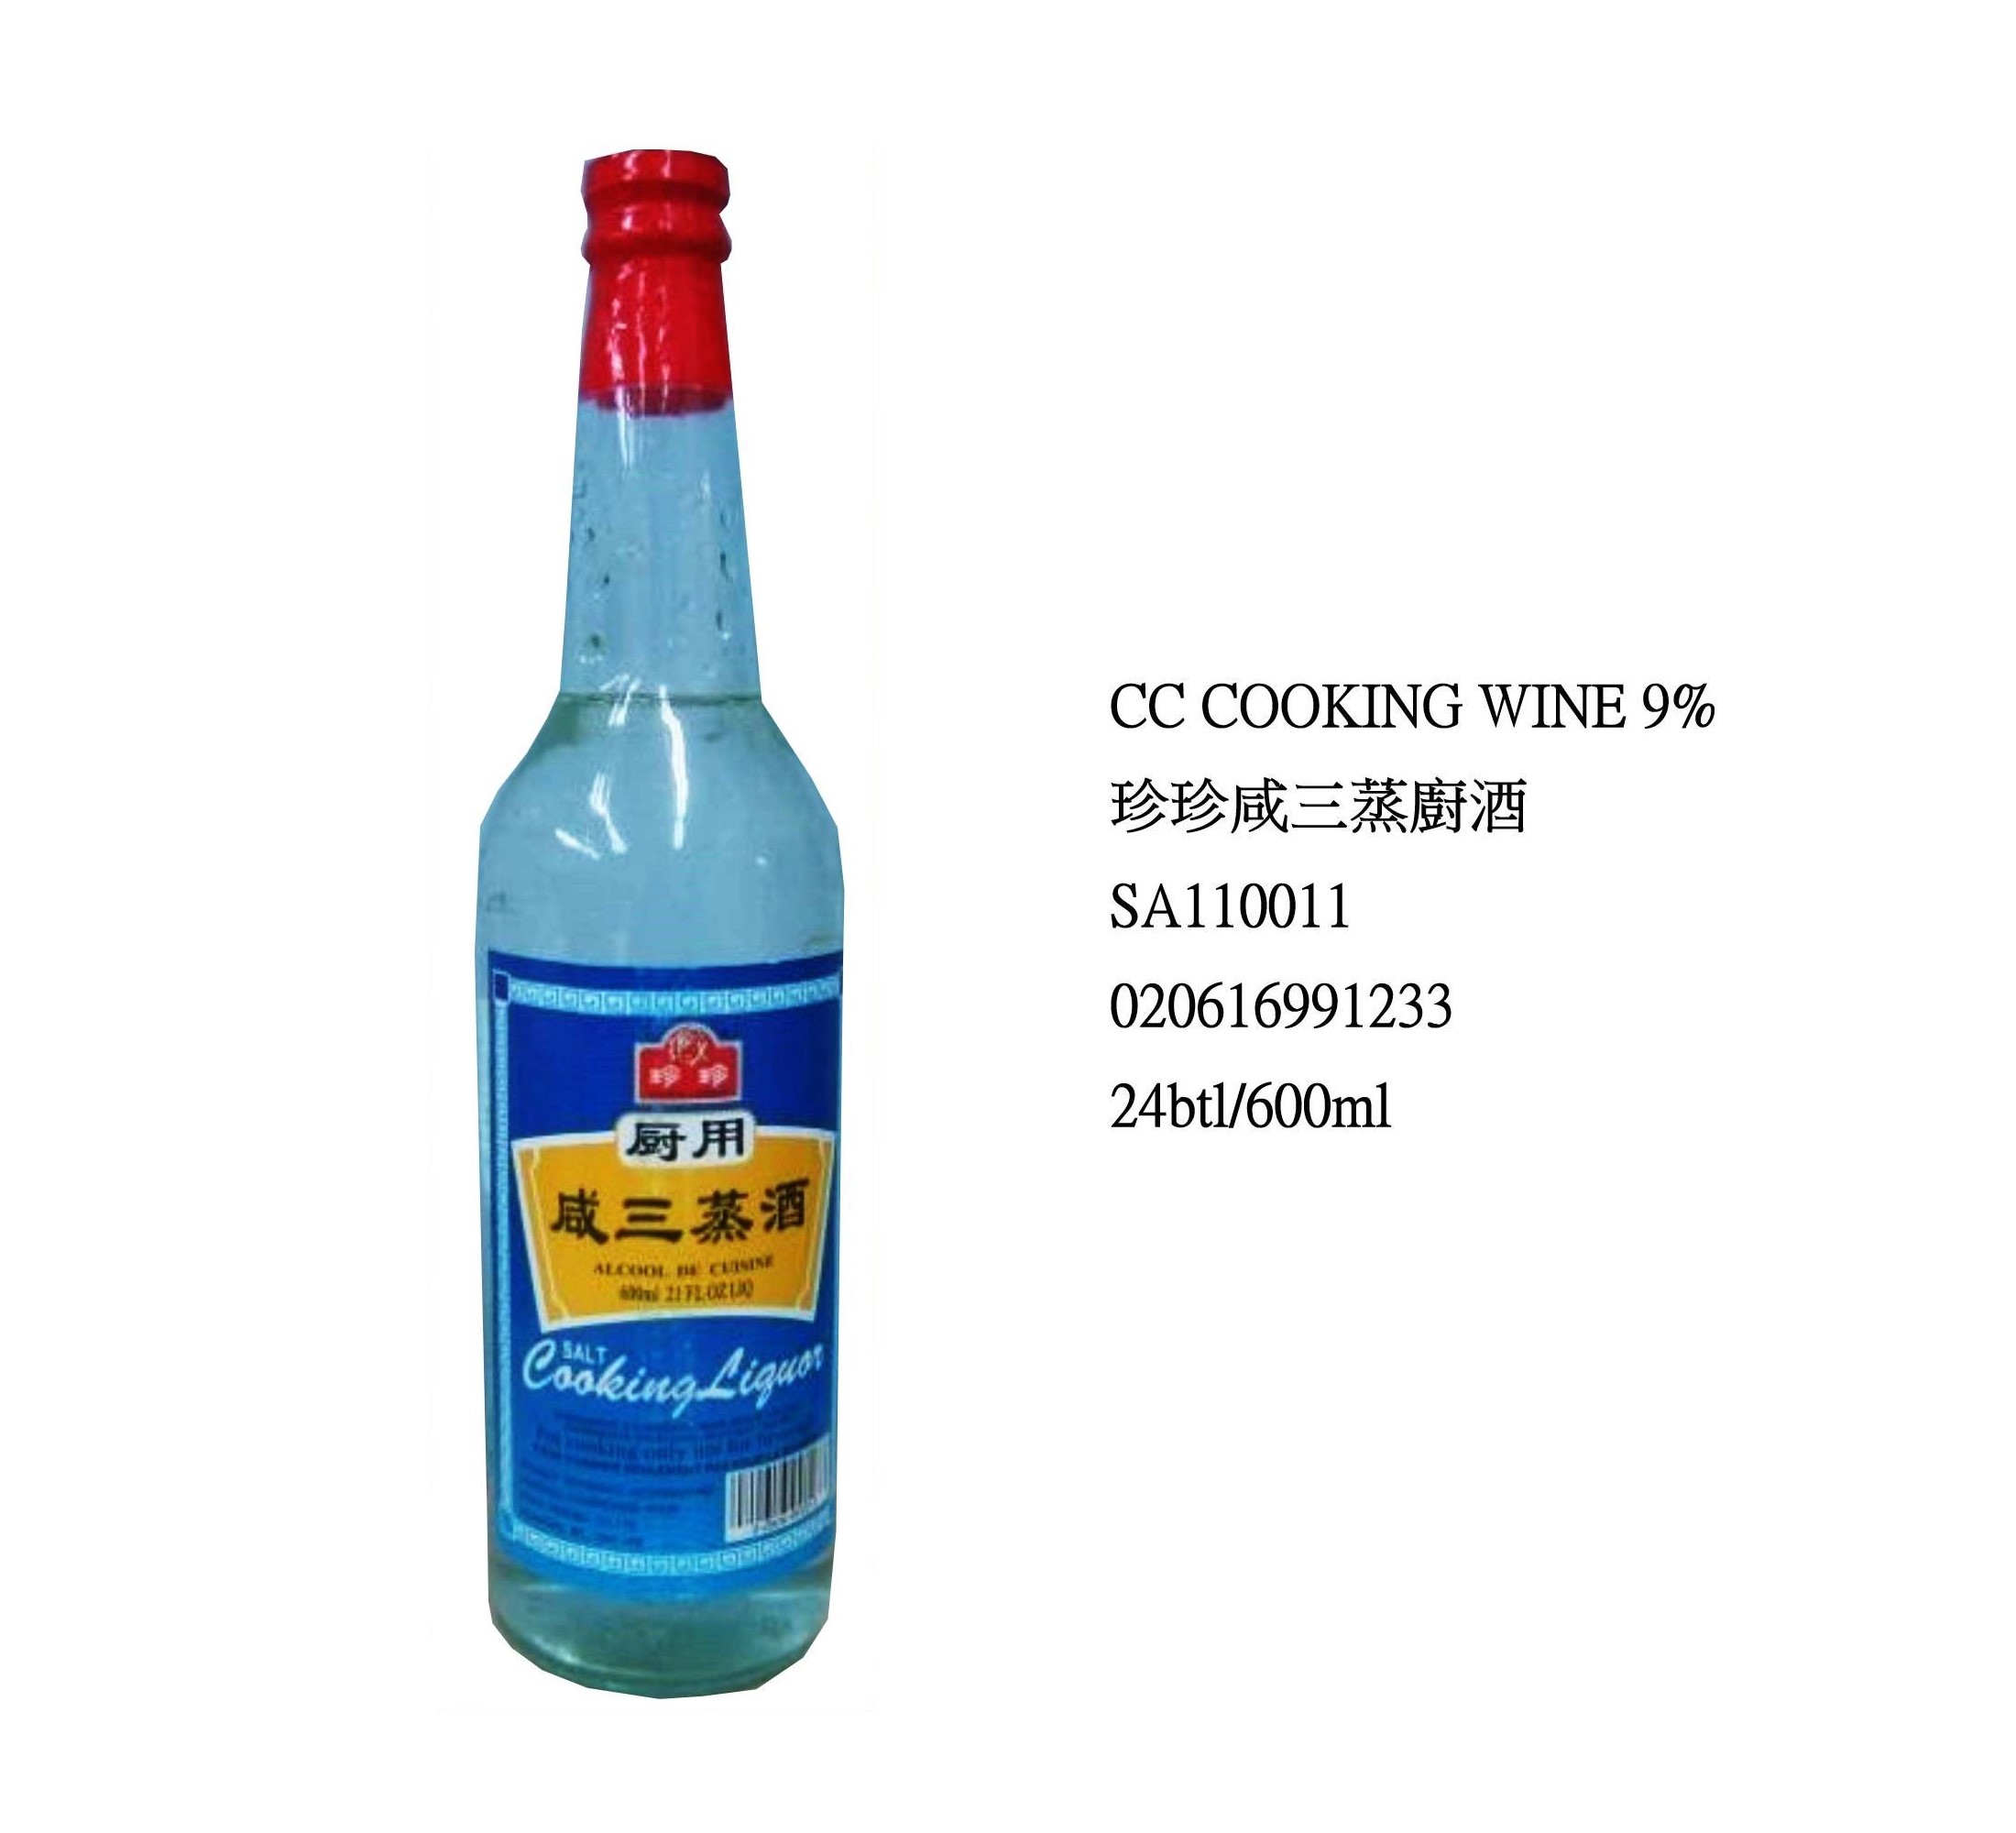 CHEN CHEN COOKING WINE 9% SA110011